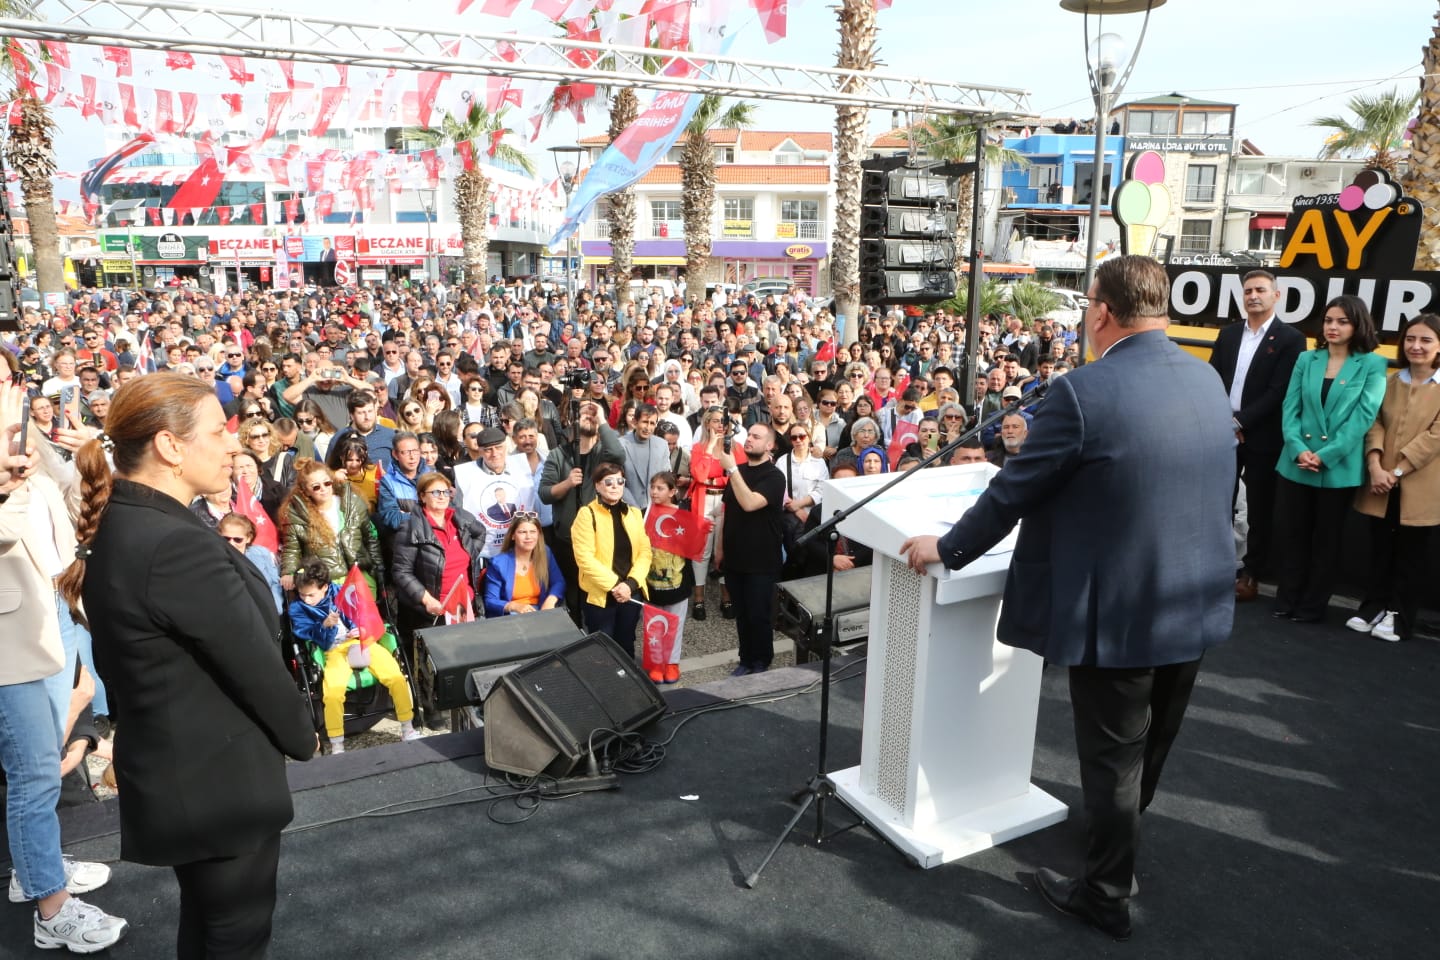 ismail yetişkin İzmir Seferihisar’da İyi Parti’den istifa eden ve aralarında İlçe Başkanı Kürşat Cebeci’nin de bulunduğu 317 kişi CHP’ye katıldı. CHP’ye katılan partililere ise rozetlerini Seferihisar Belediye Başkanı ve Belediye Başkan Adayı İsmail Yetişkin, CHP Genel Başkan Yardımcısı ve Parti Sözcüsü Deniz Yücel ile CHP Seferihisar İlçe Başkanı Rahmi Tezel Çınar taktı. CHP’ye katılacak İyi Partili kişi sayının 500’ü bulması bekleniyor.